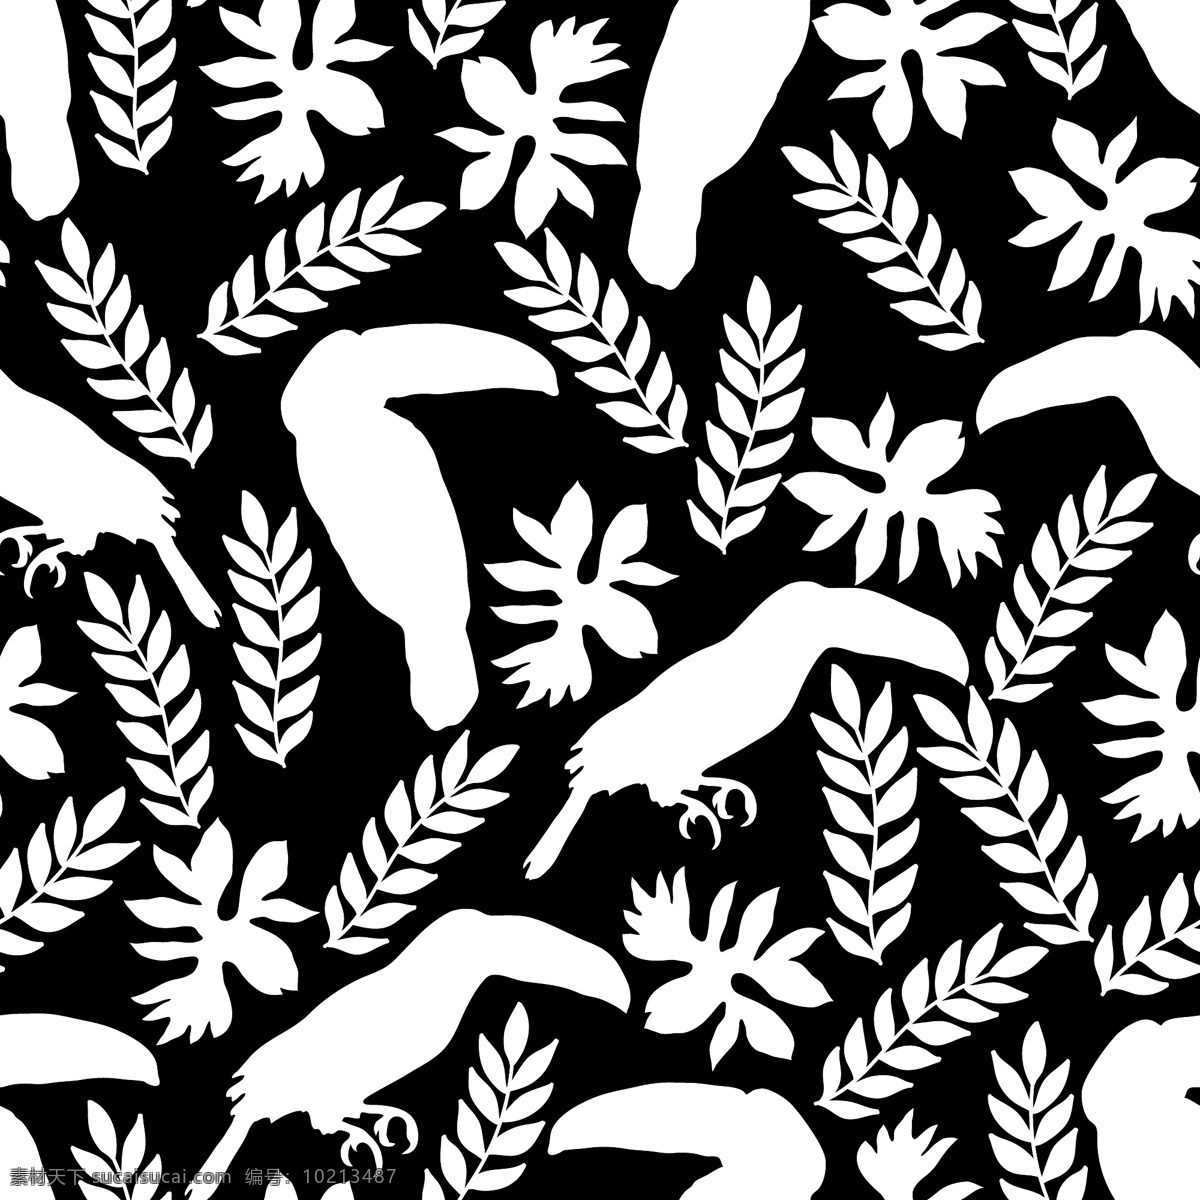 花草 动物 水彩 diy 纹理 图案 简约 黑色 条纹 卡通 花纹 小虾 矢量 设计素材 平面素材